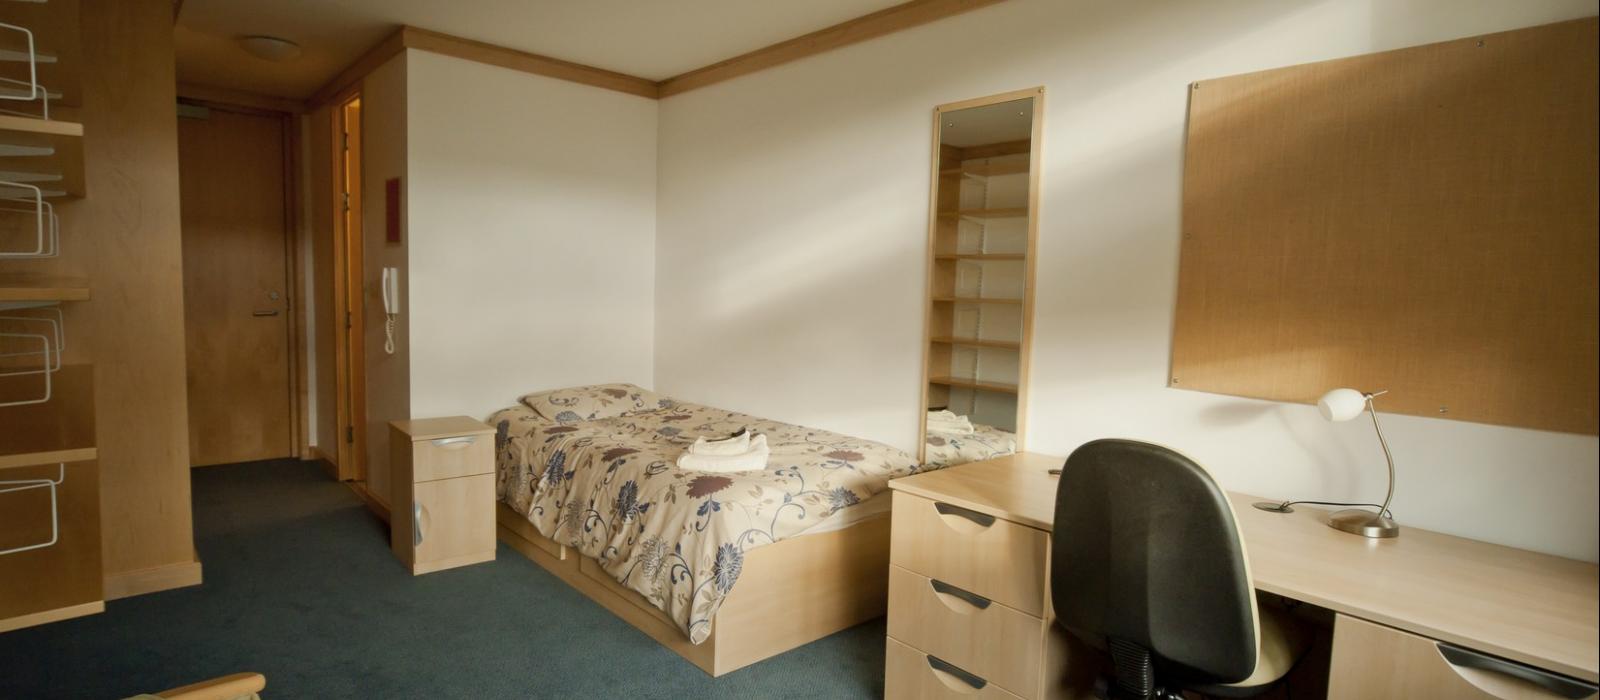 Bedroom, Wolfson College